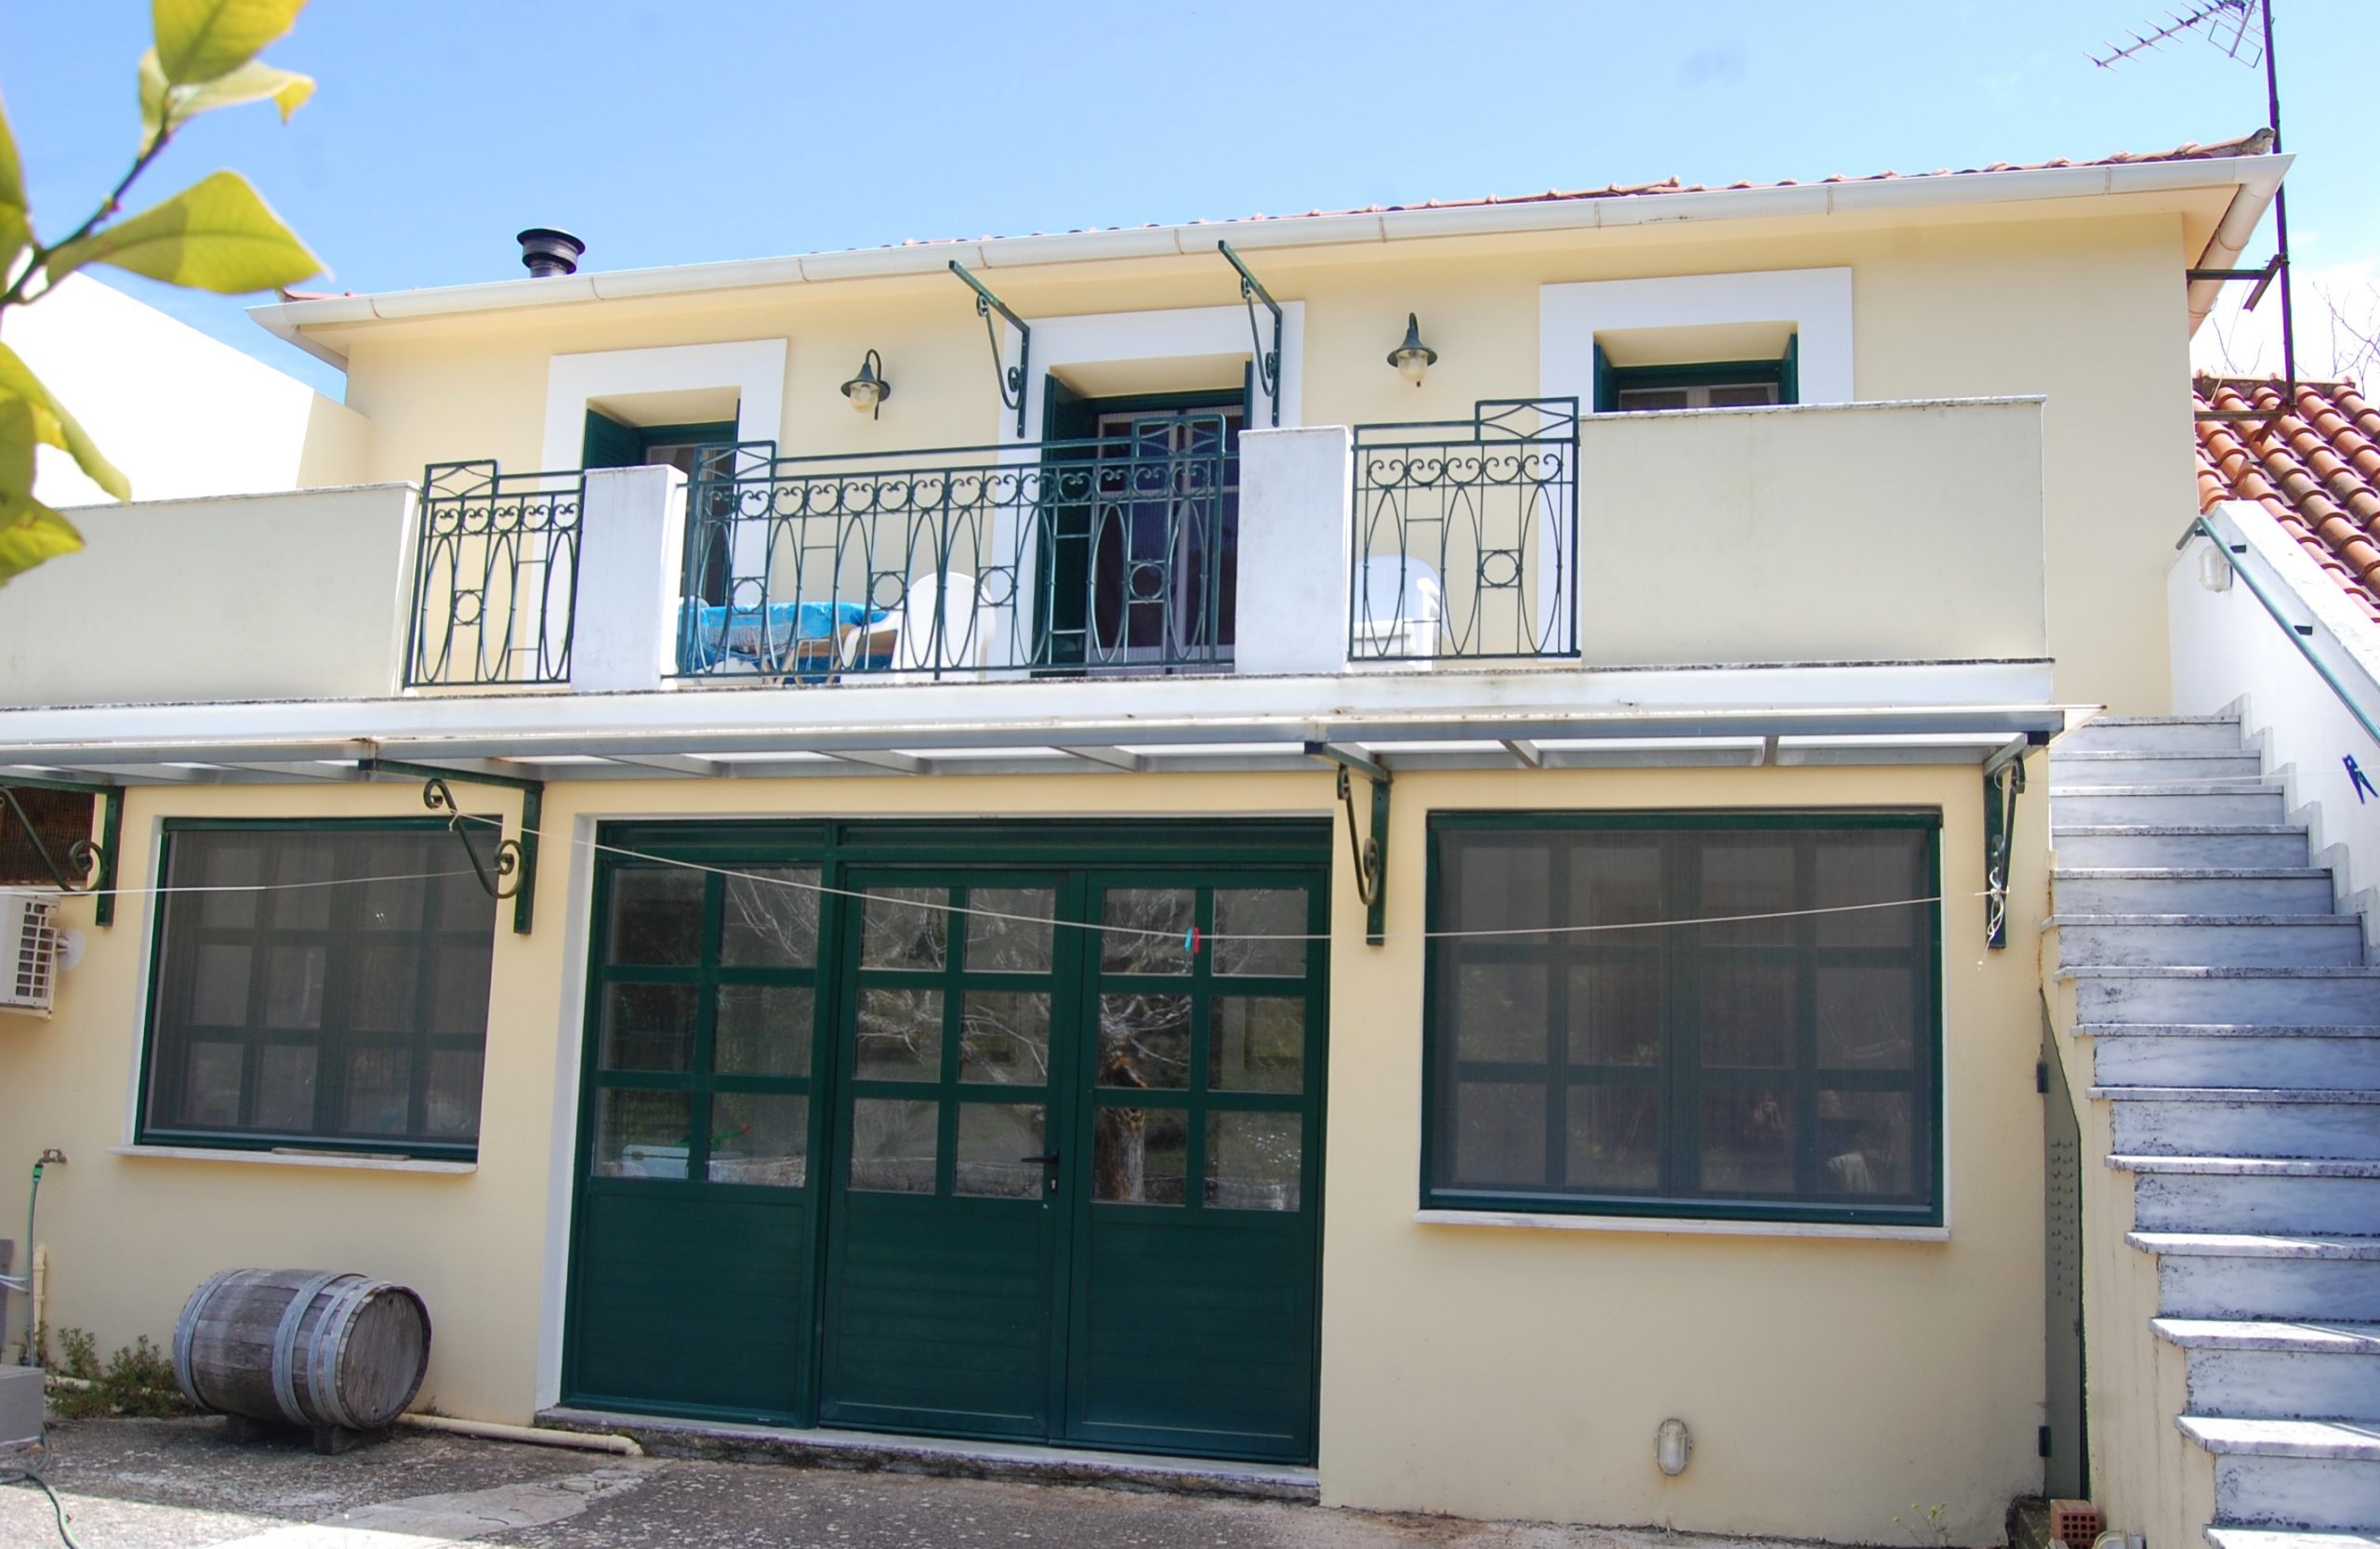 Εξωτερική πρόσοψη κατοικίας προς πώληση στην Ιθάκα, Εξωγή